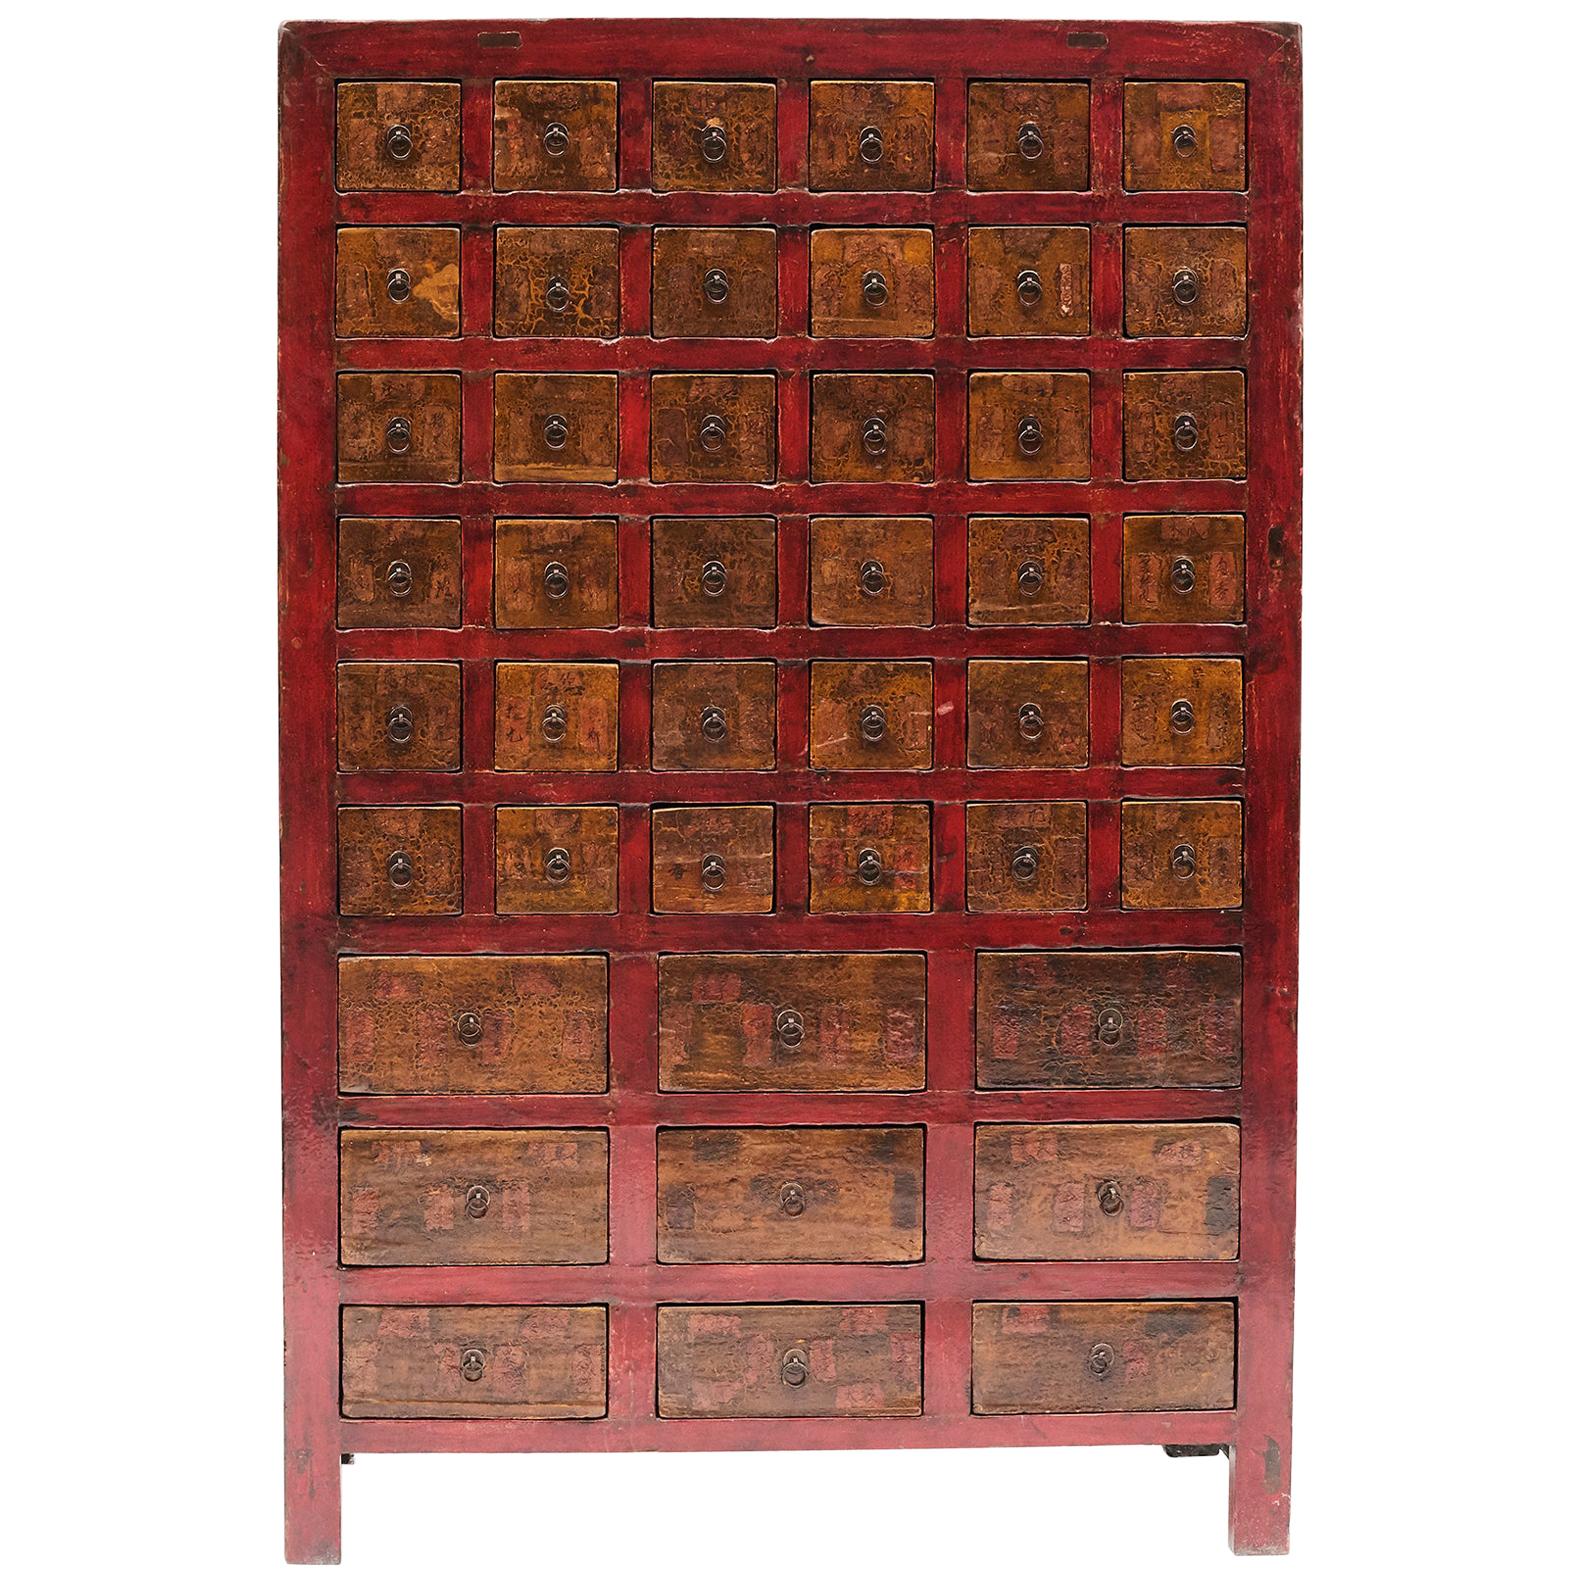 Botiquín chino del siglo XIX con 45 cajones